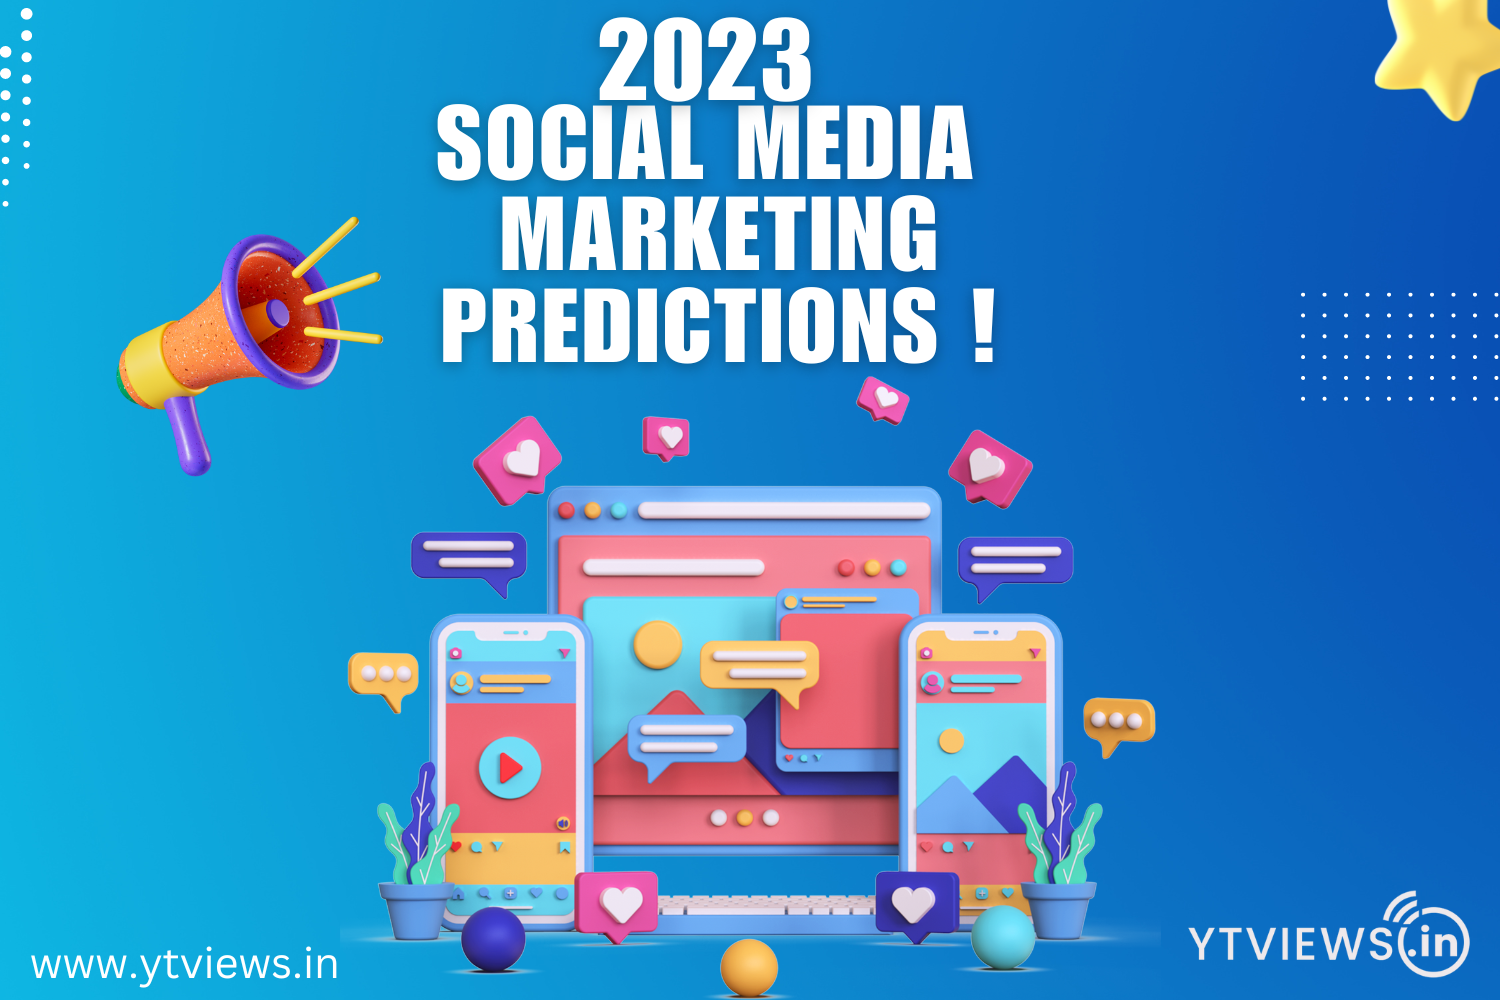 2023 Social Media Marketing Predictions